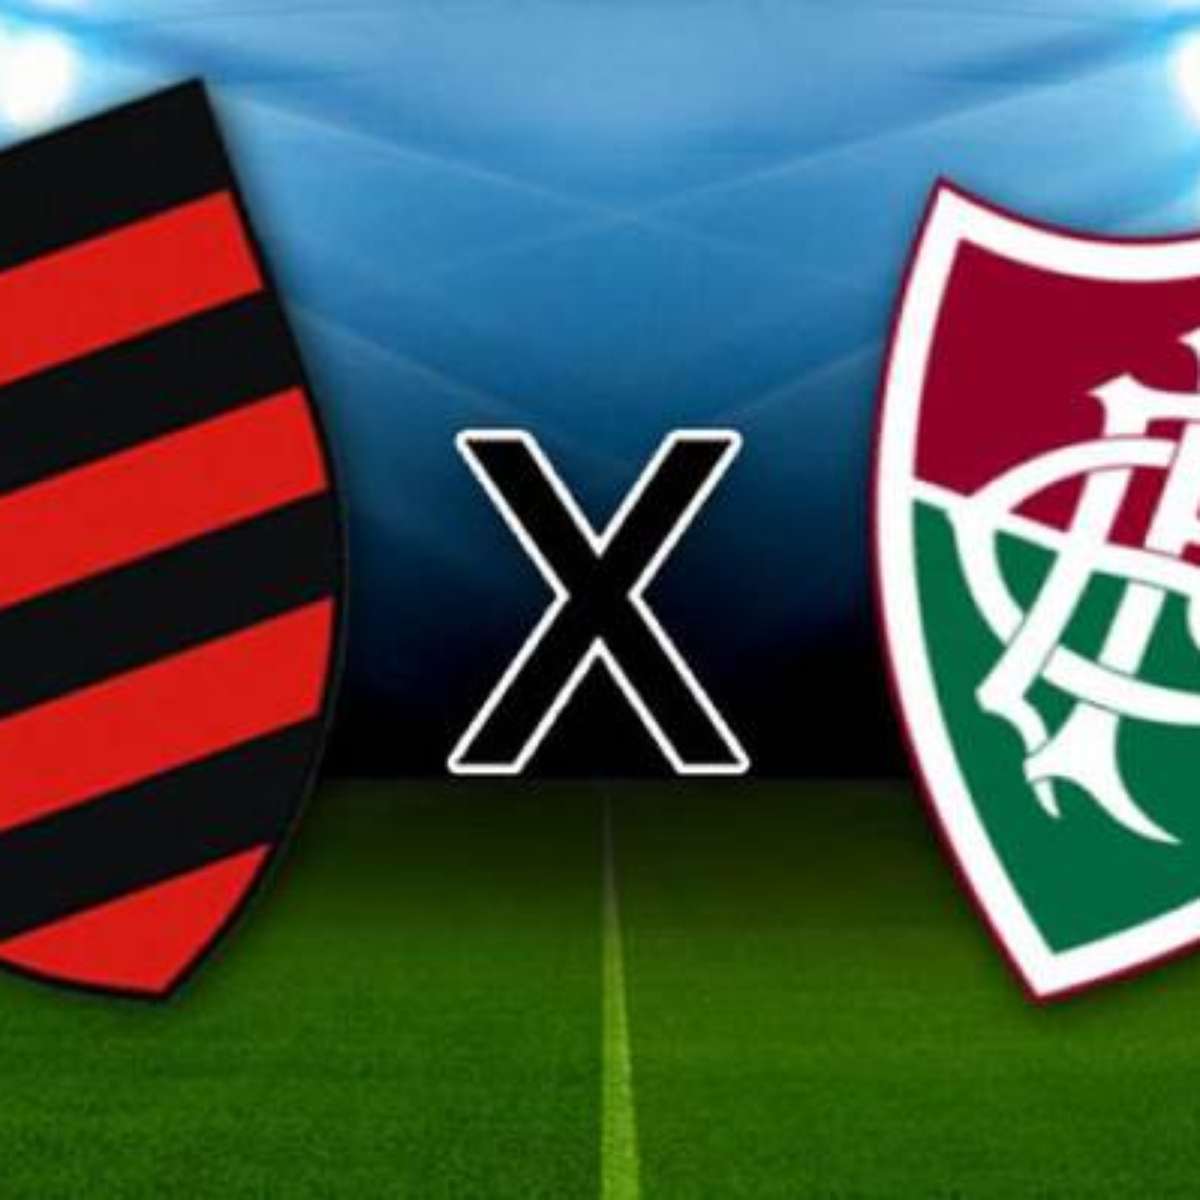 Flamengo x Fluminense  Campeonato Estadual de Futebol Feminino - Semifinal  Jogo 2 